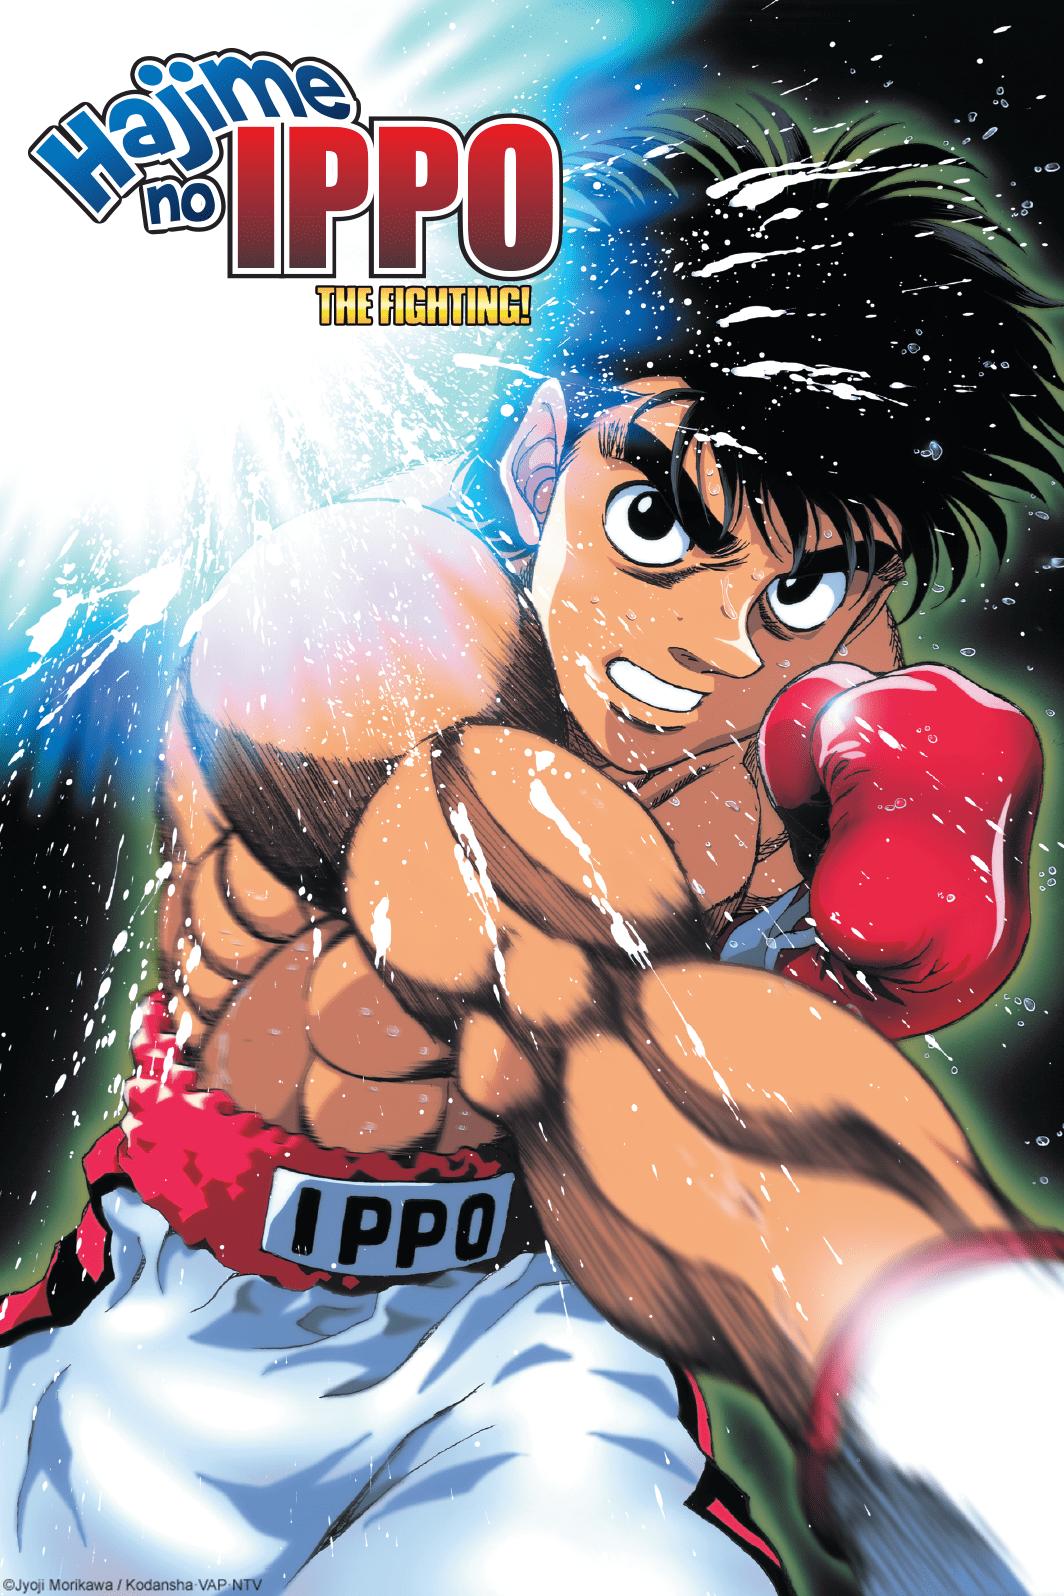 Hajime no Ippo The Fighting! (Fighting Spirit)